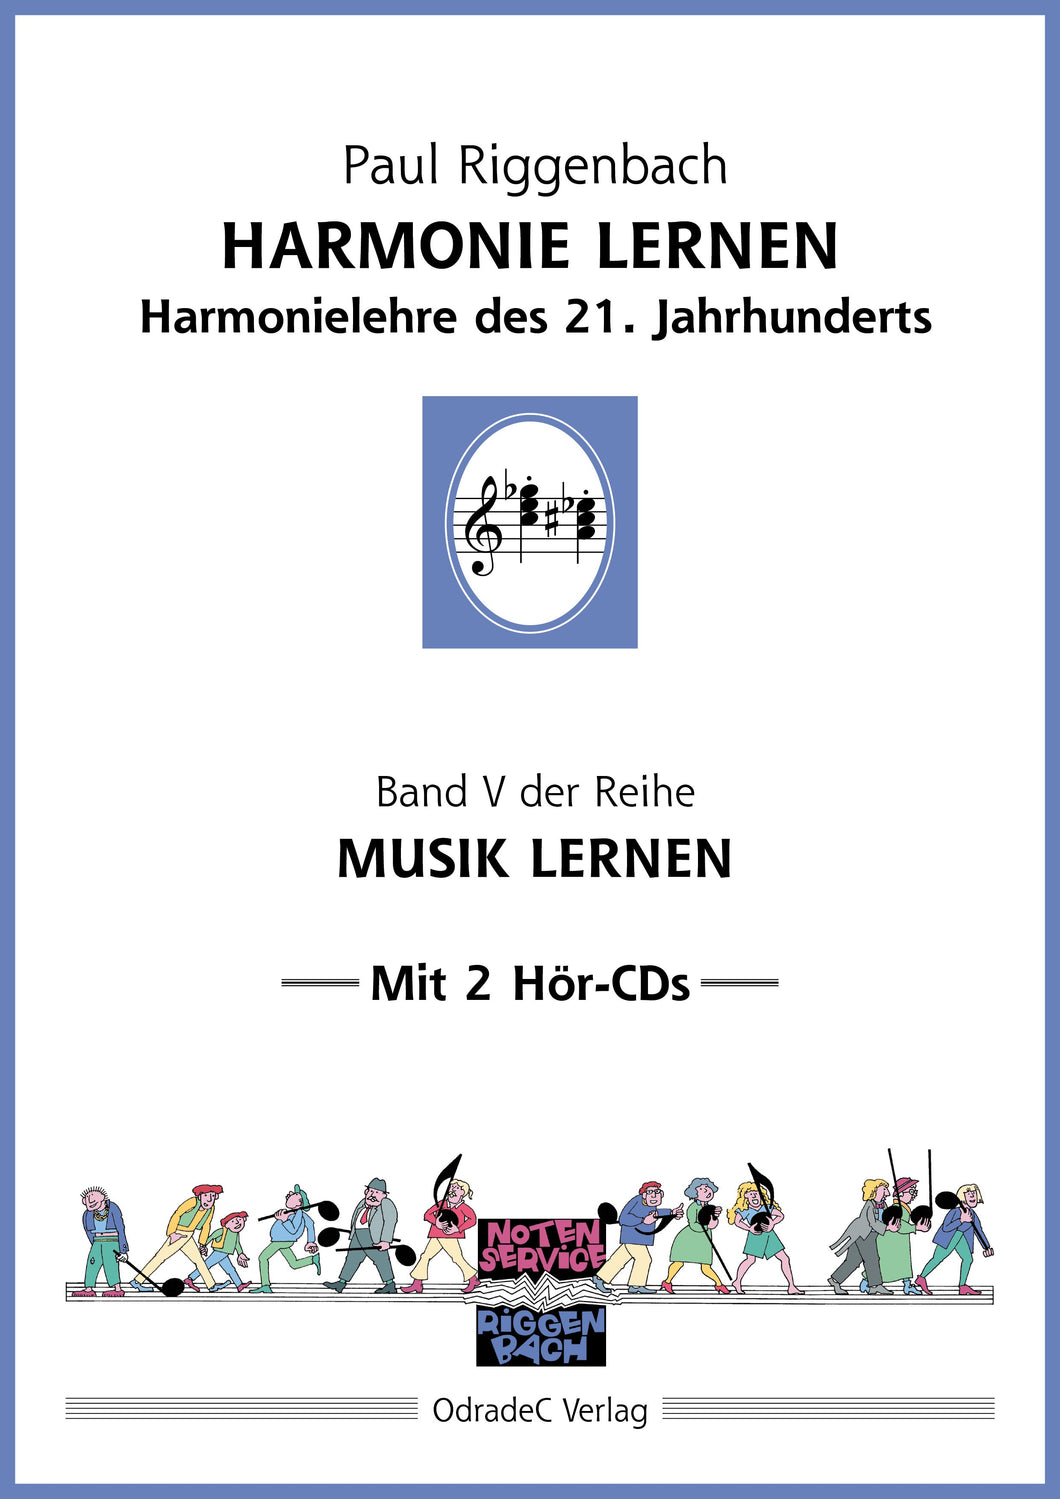 Riggenbach, Paul: Harmonie lernen. Harmonielehre des 21. Jahrhunderts. Mit 2 Hör-CDs (Buch)